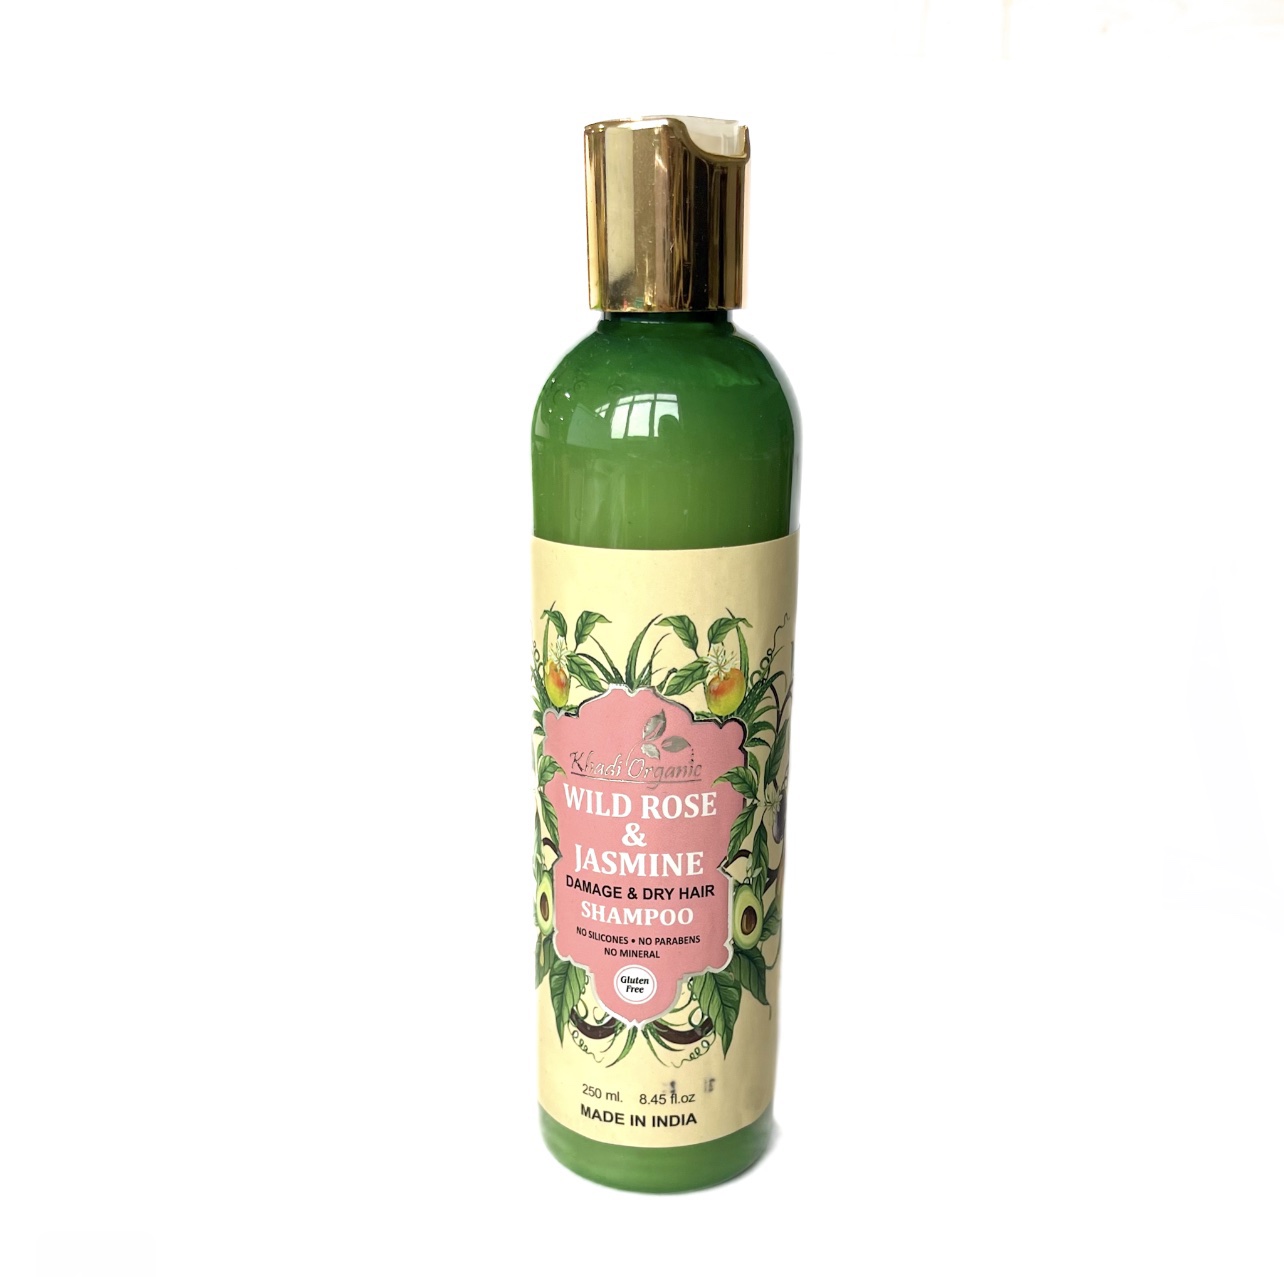 WILD ROSE & JASMINE Damage & Dry Hair Shampoo, Khadi Organic (ДИКАЯ РОЗА И ЖАСМИН Шампунь для Сухих и Поврежденных волос, Кхади Органик), 250 мл.